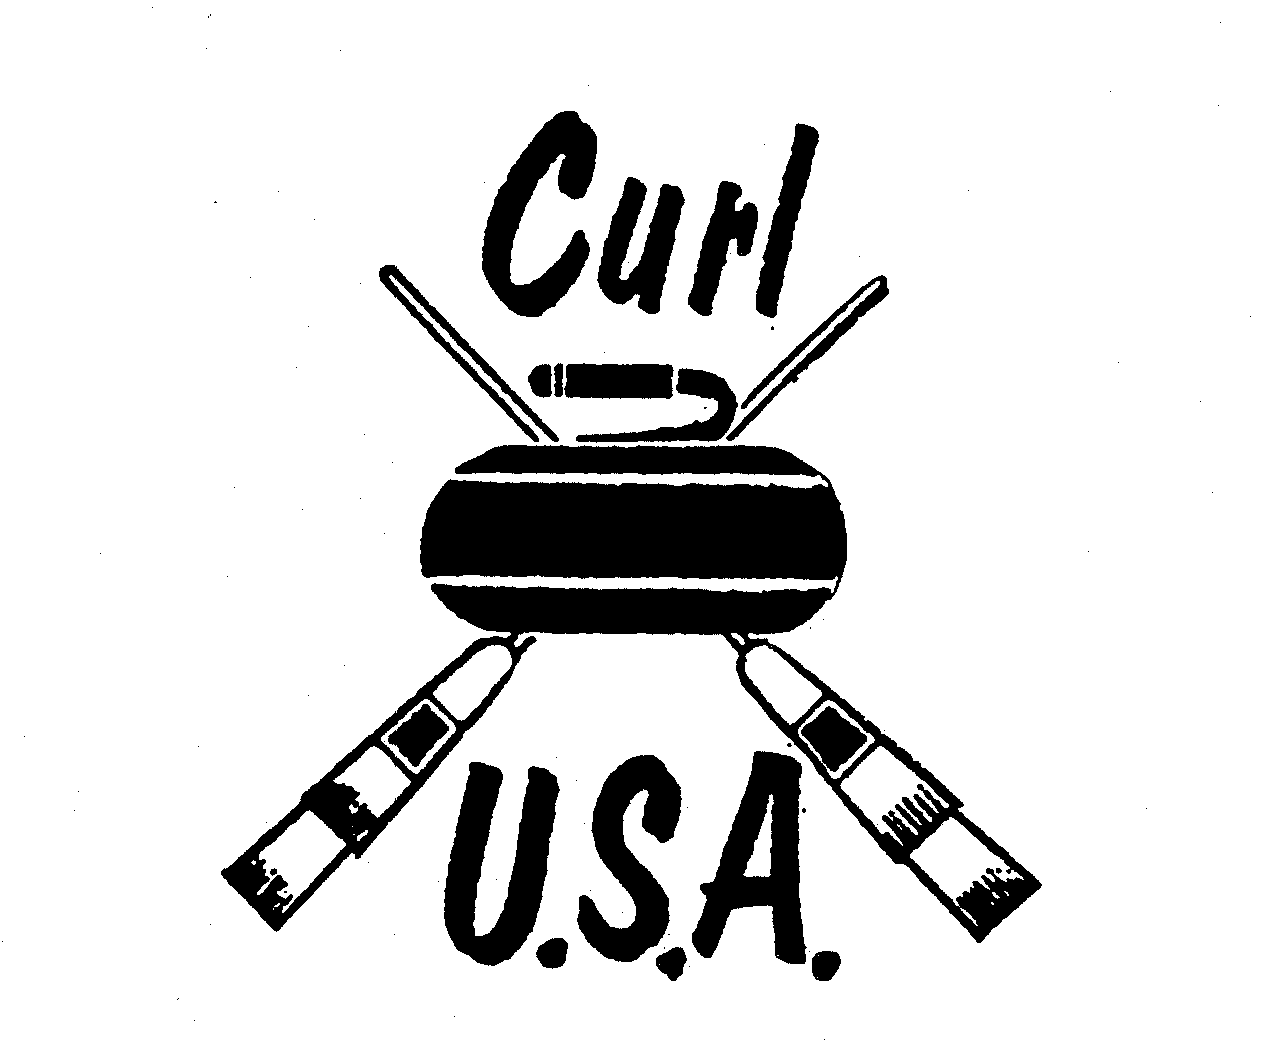  CURL U.S.A.